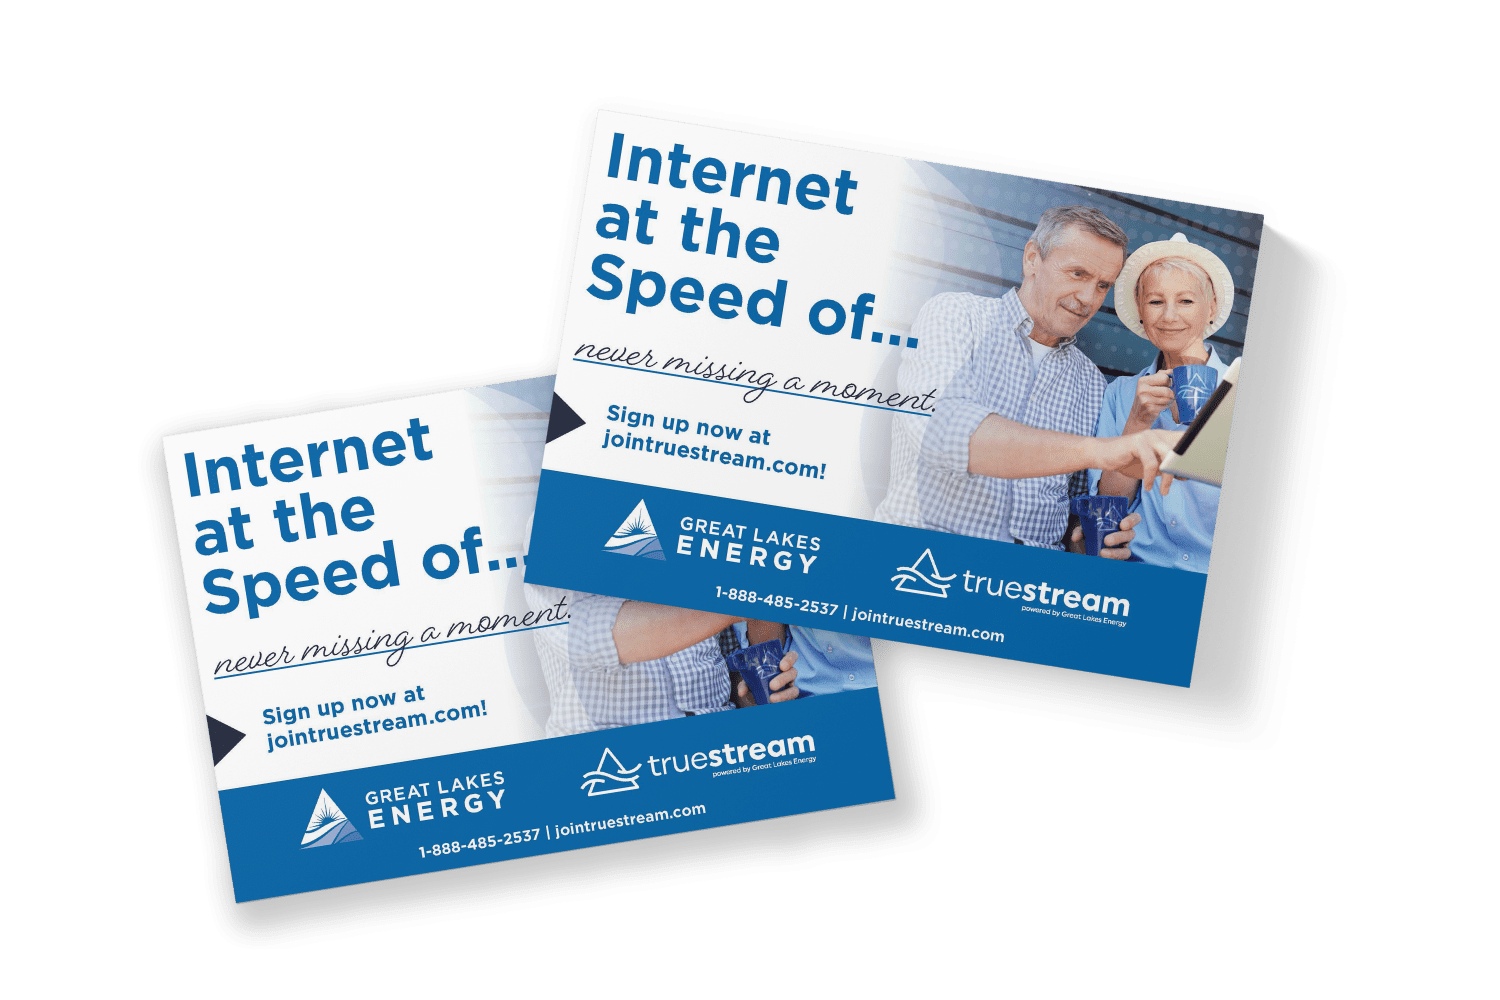 Ad campaign for Michigan Internet service Provider